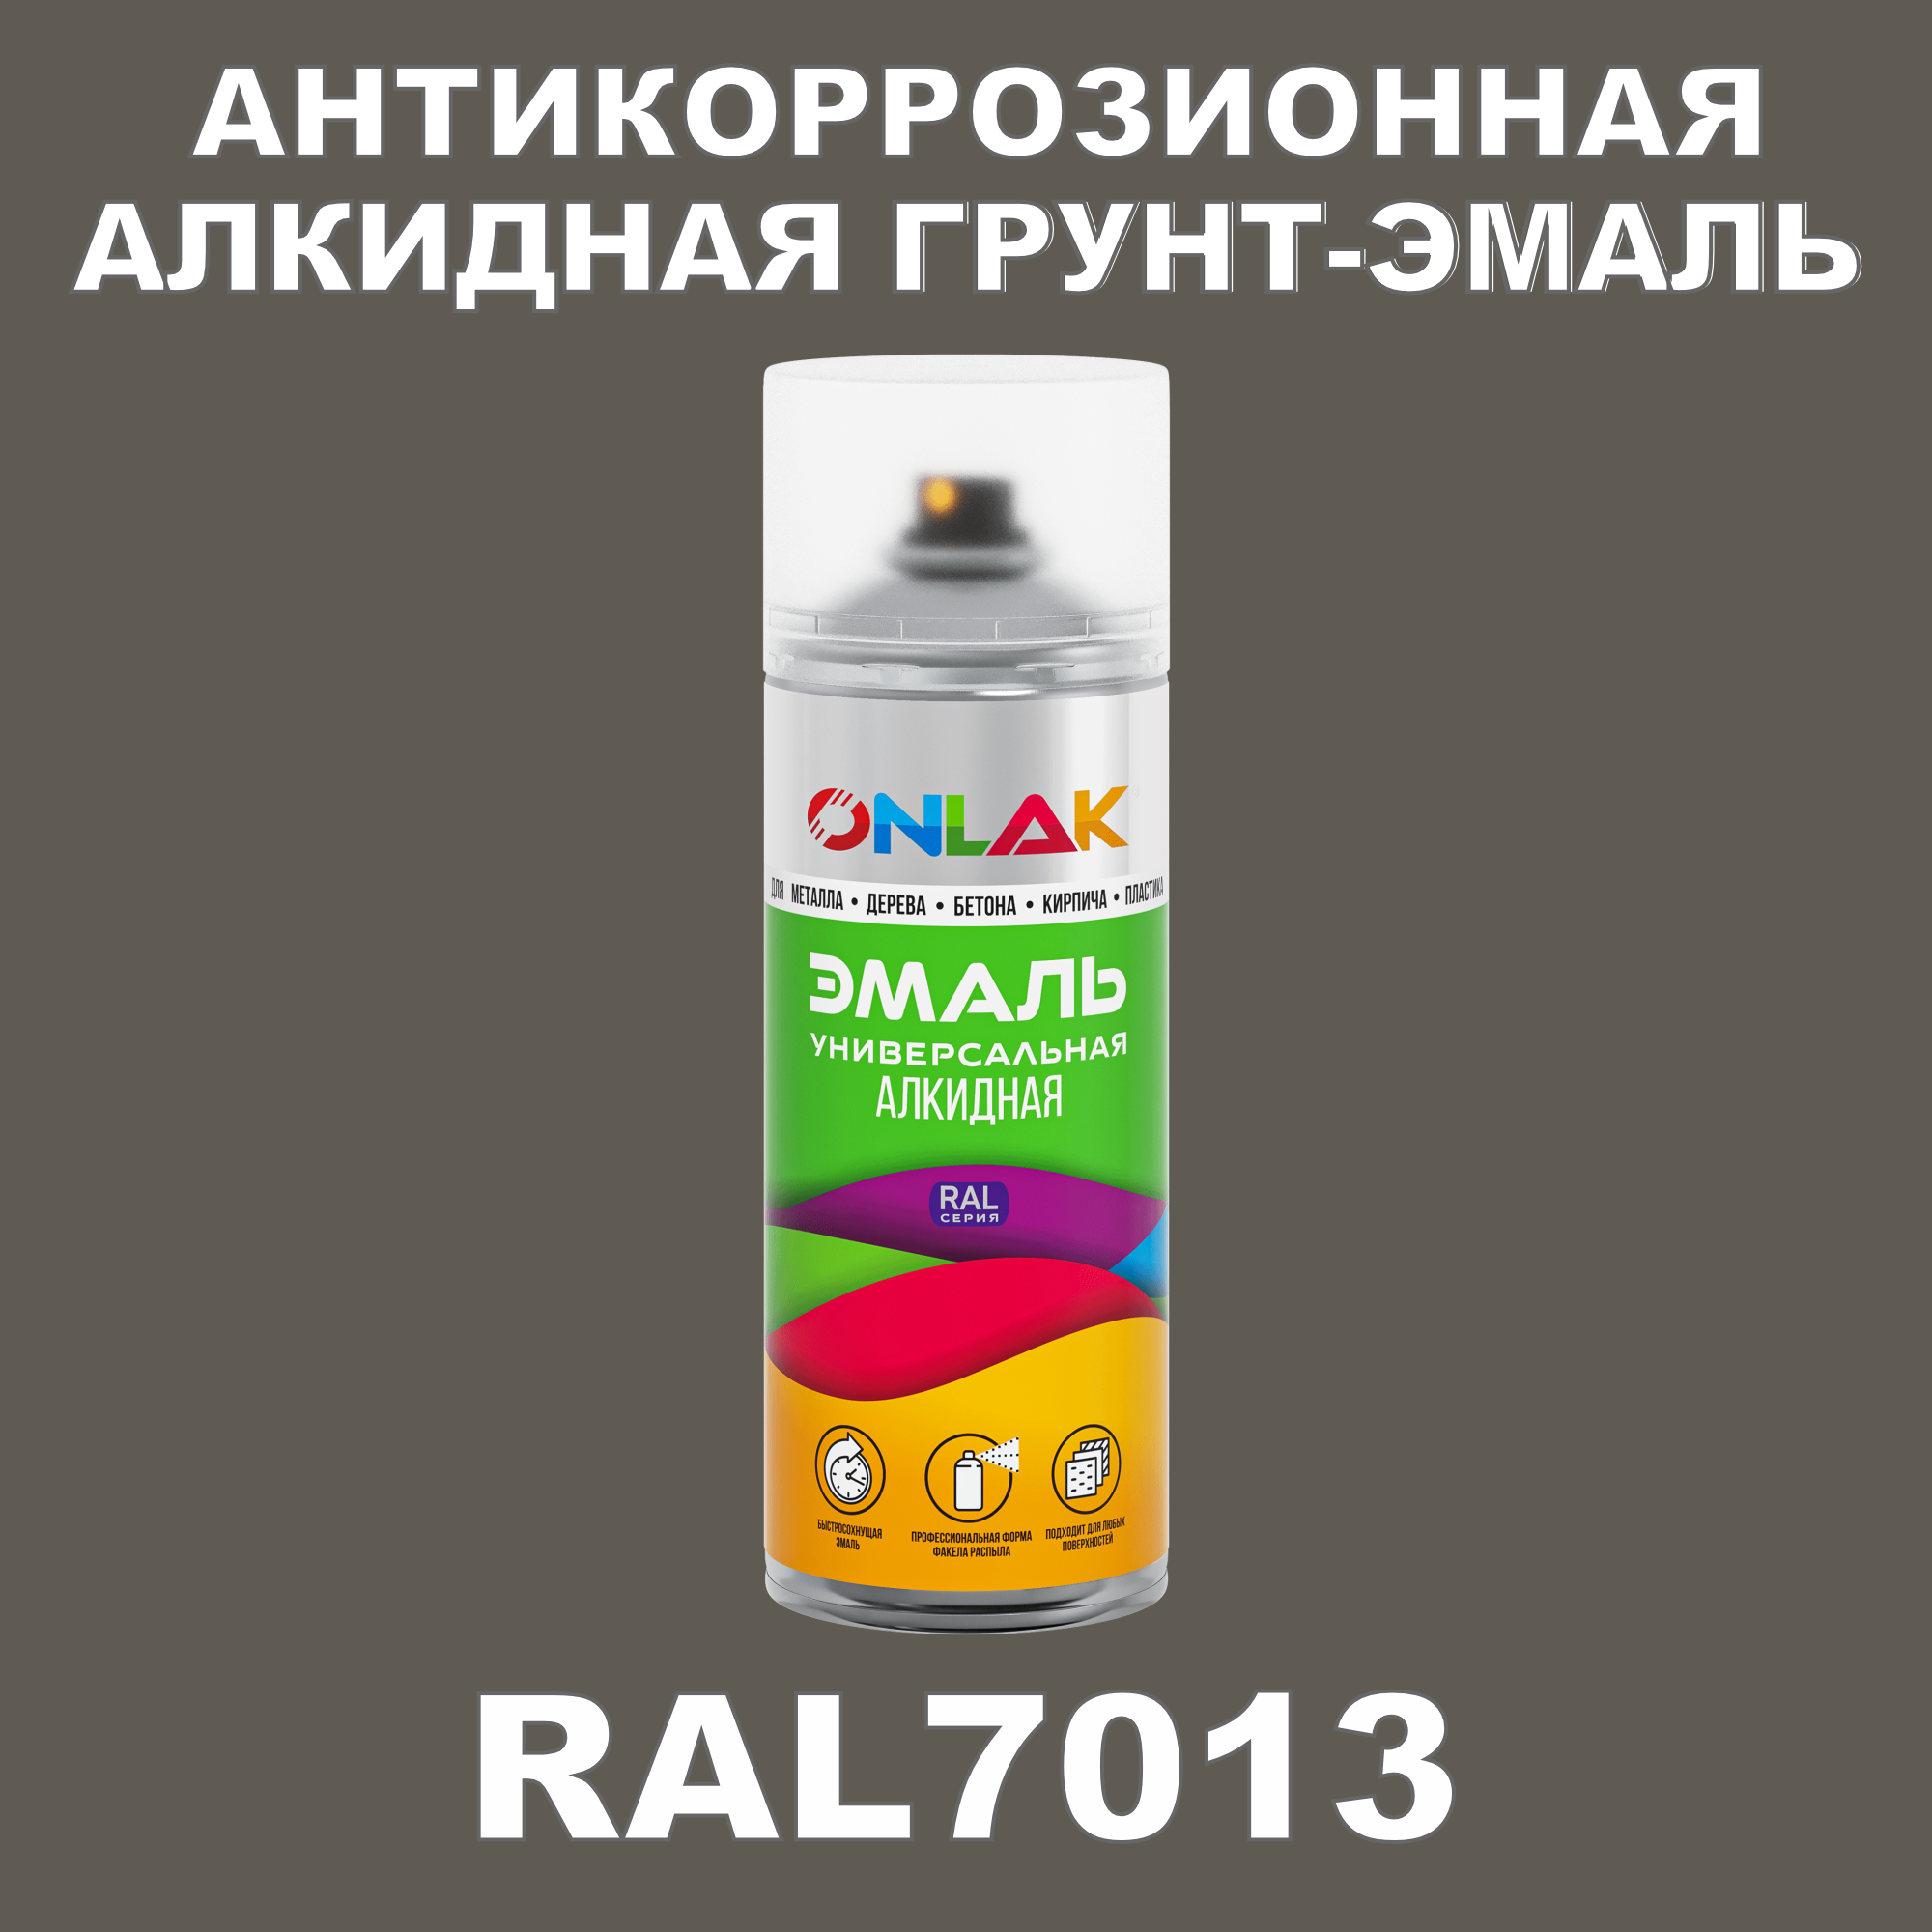 Антикоррозионная грунт-эмаль ONLAK RAL7013 полуматовая для металла и защиты от ржавчины